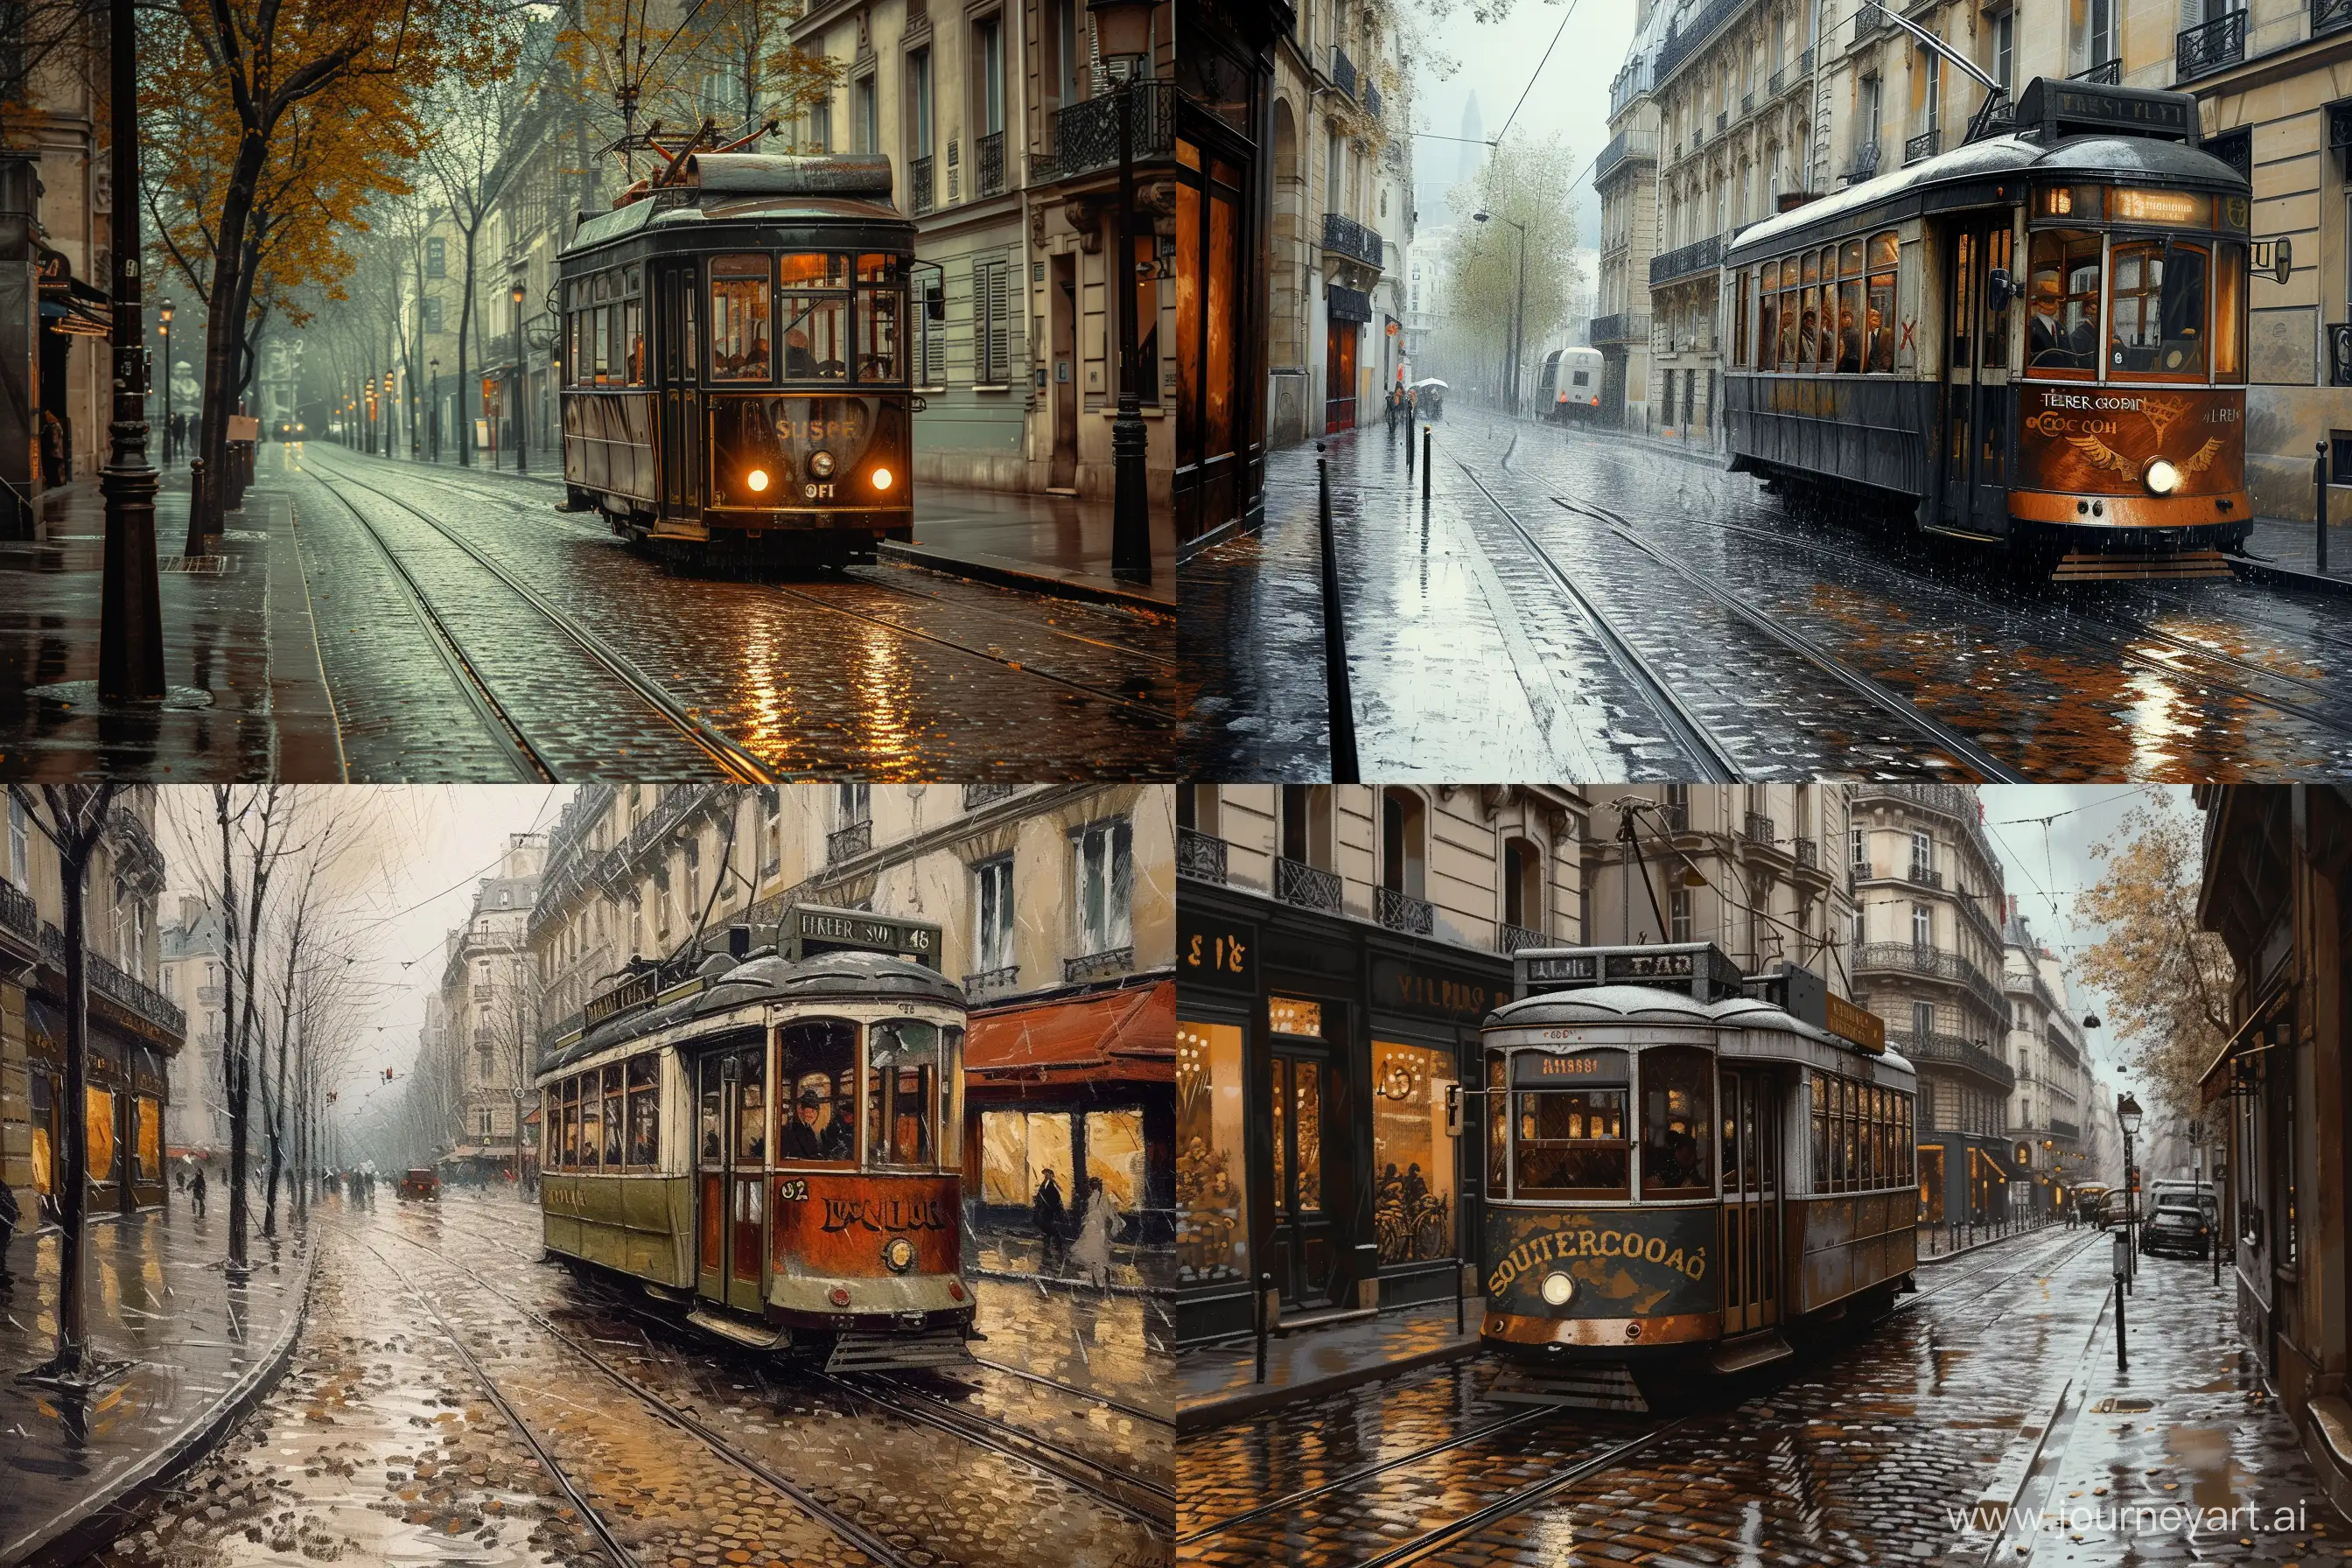 Vintage-Parisian-Tram-in-Rain-Soulacroixinspired-Cobblestone-Scene